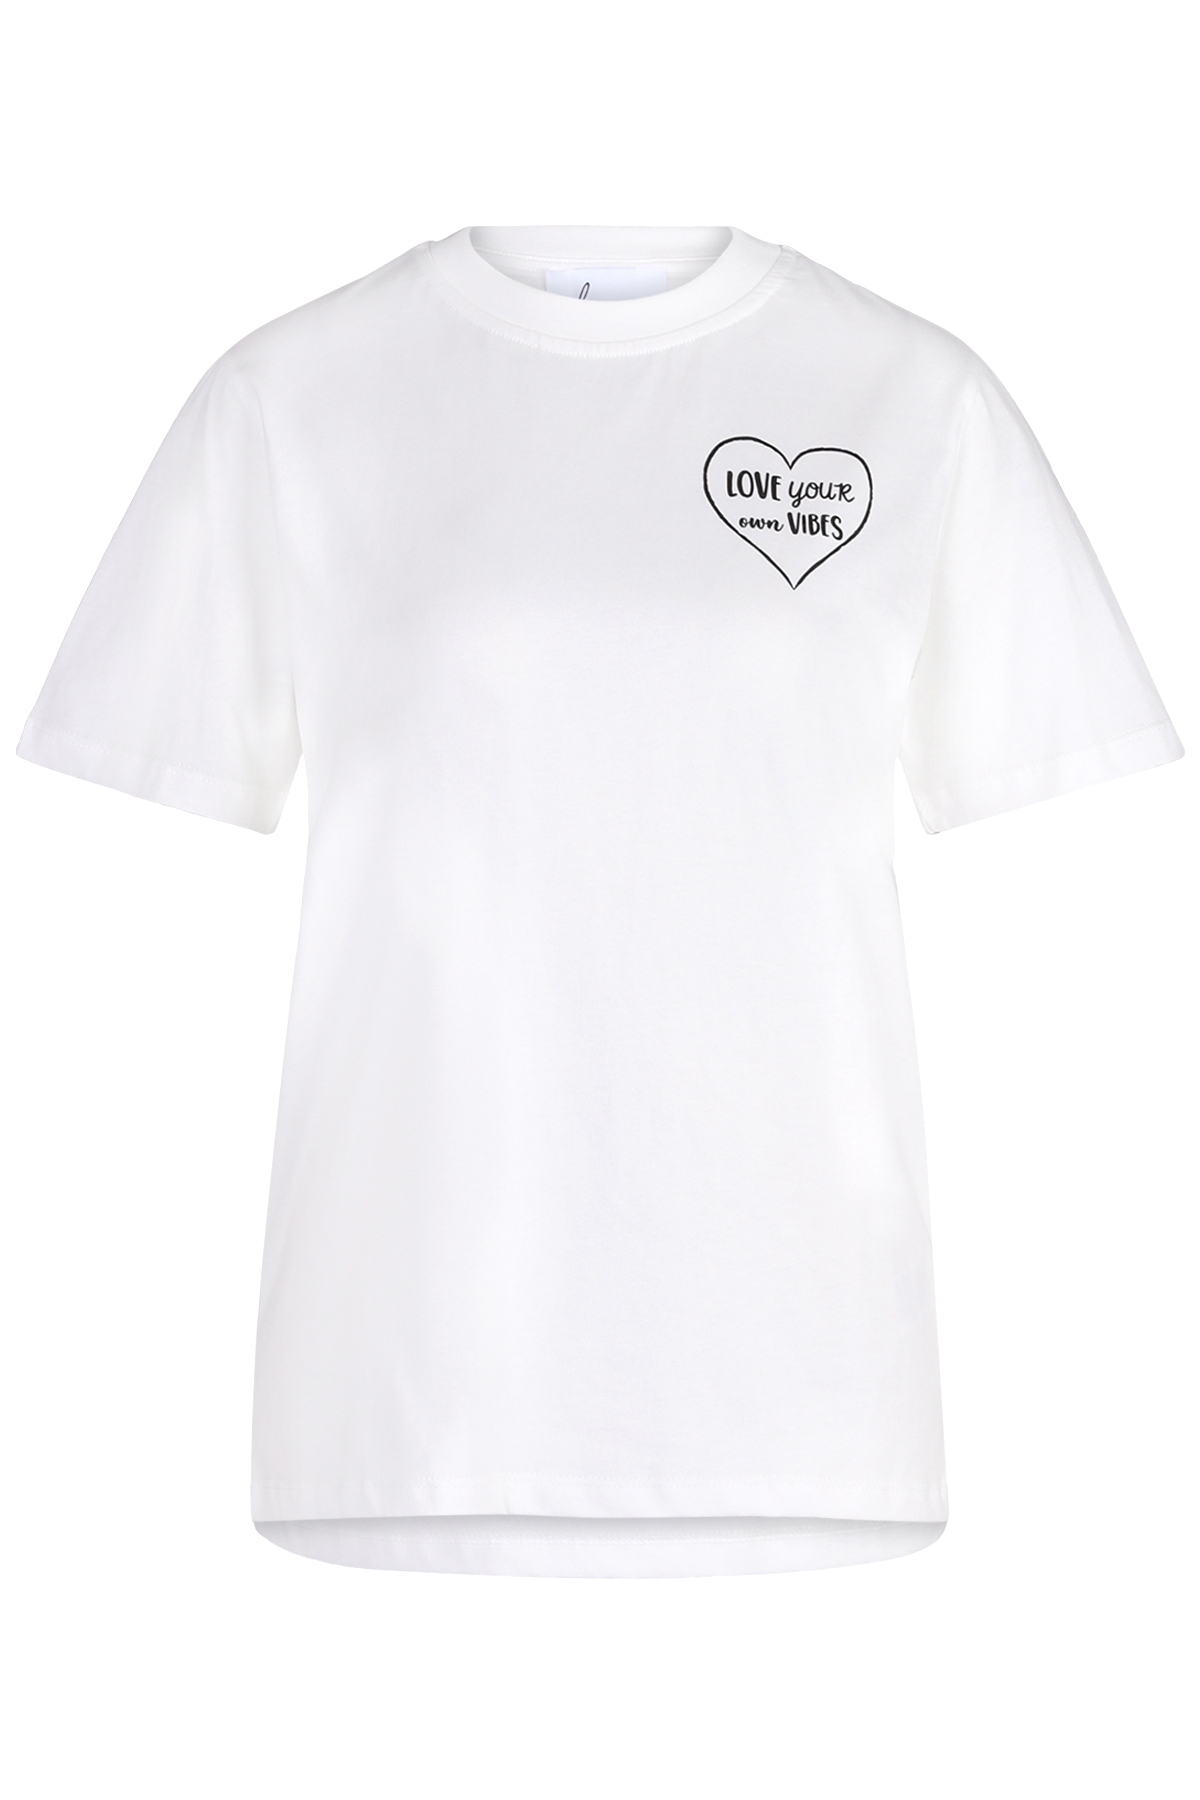 T-Shirt Heart Tee